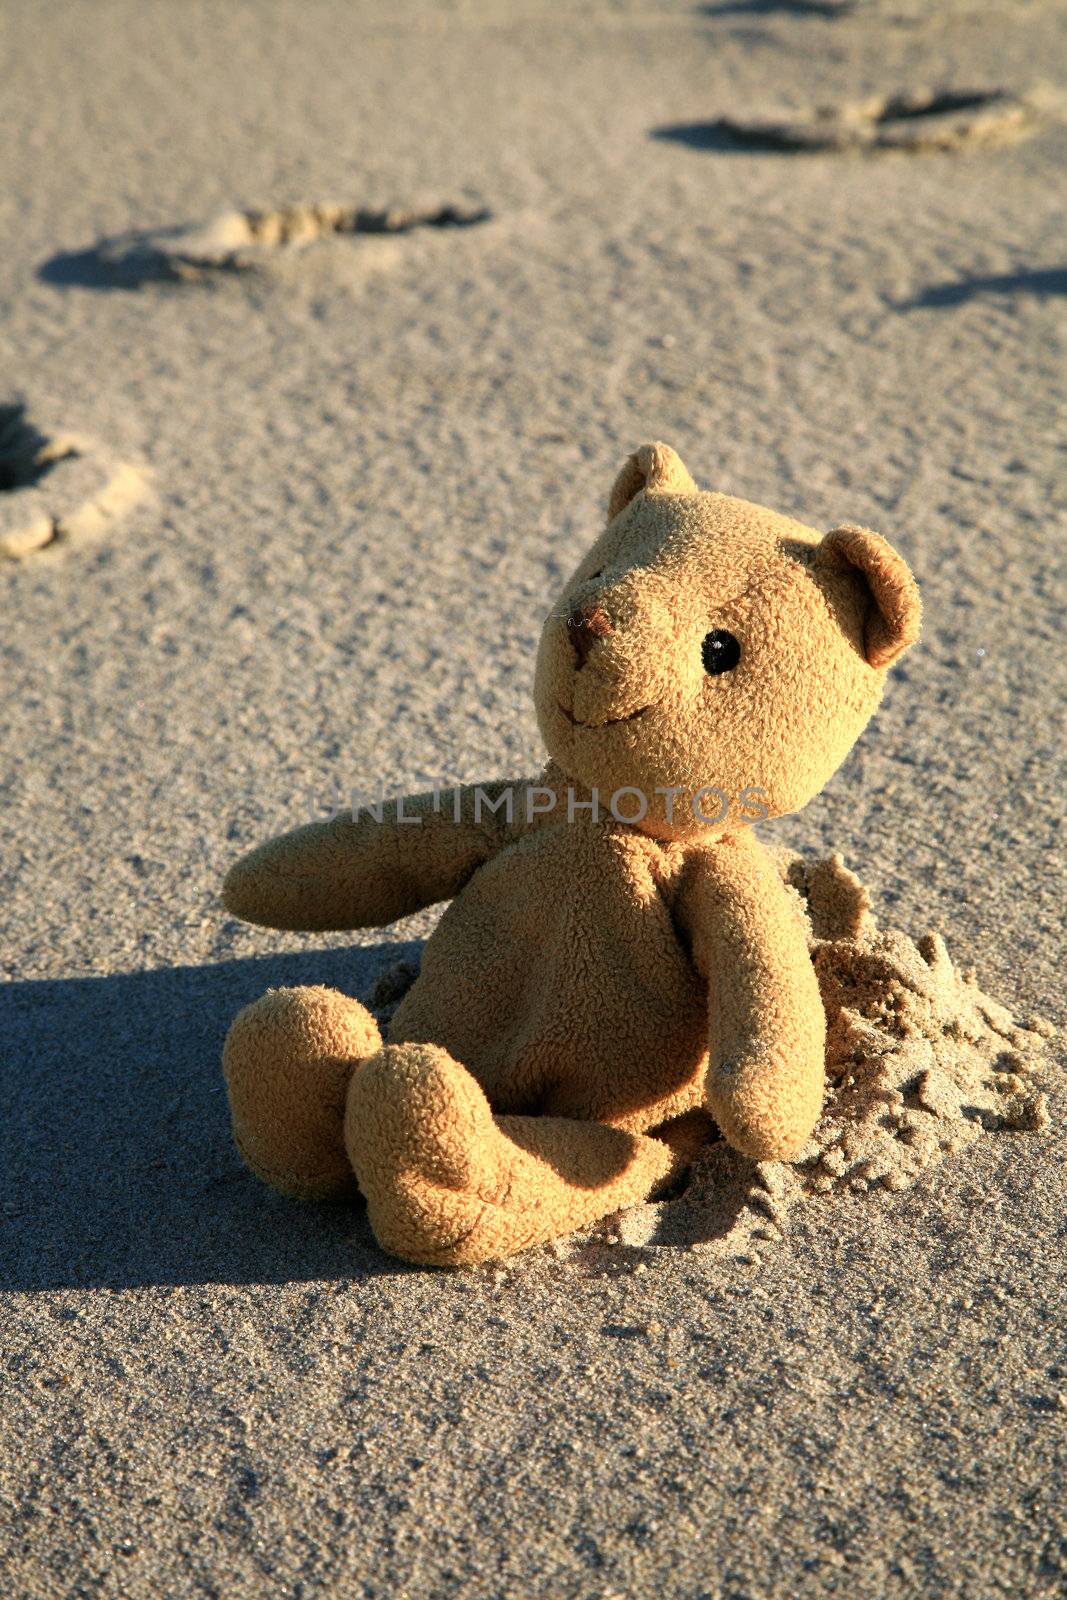 Teddy bear on the beach by fotokate